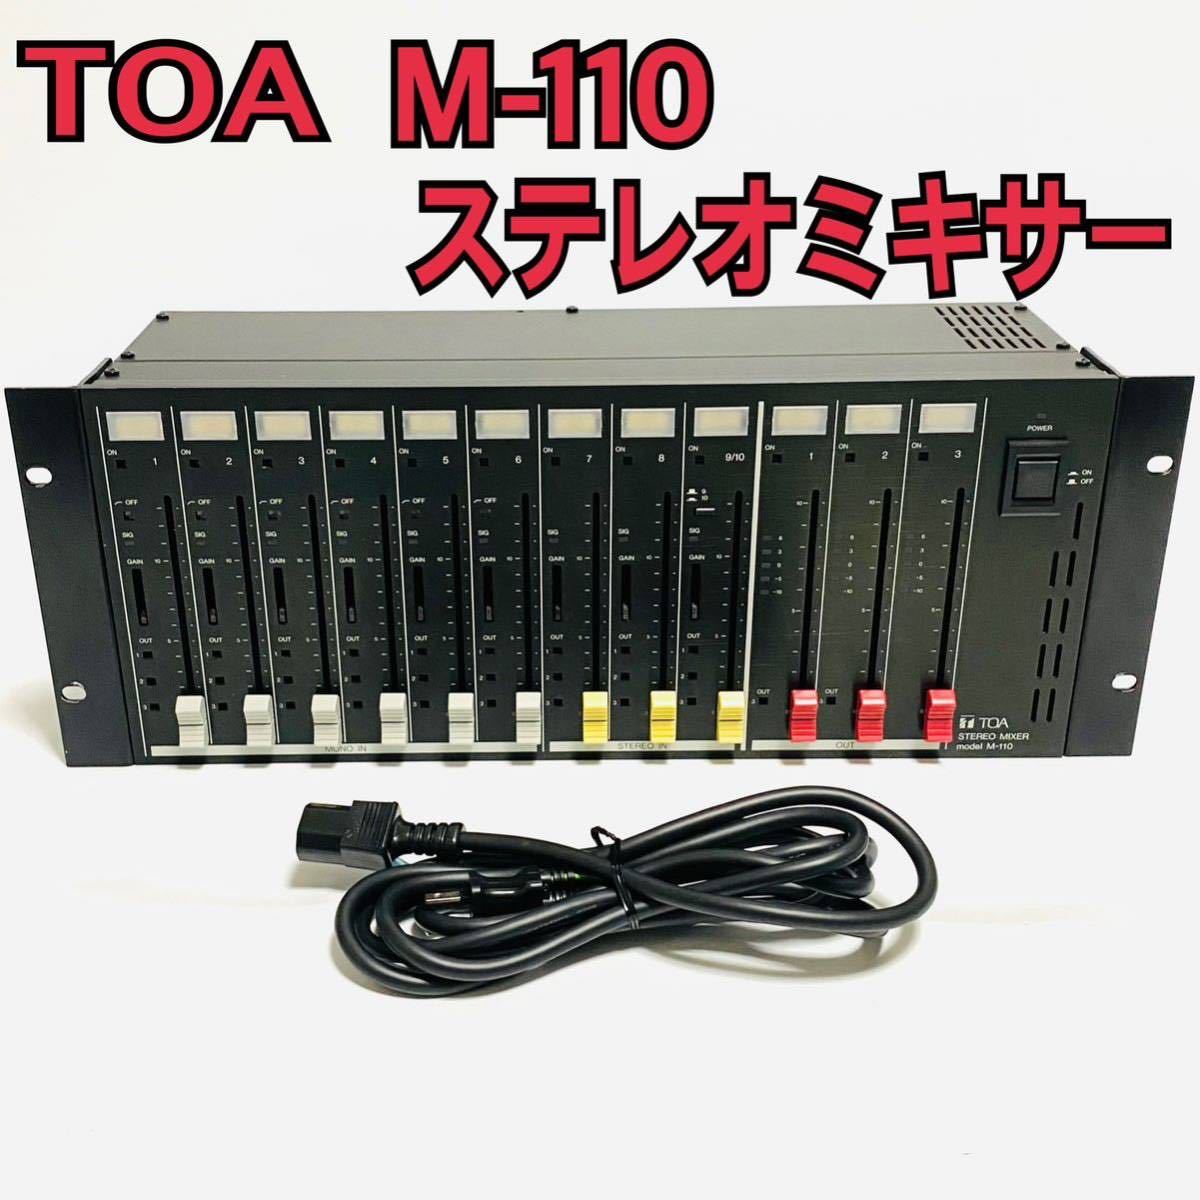 送料無料 完動品 銘機 TOA M-110 トーア ステレオミキサー ラックマウントミキサー Corporation STEREO MIXER